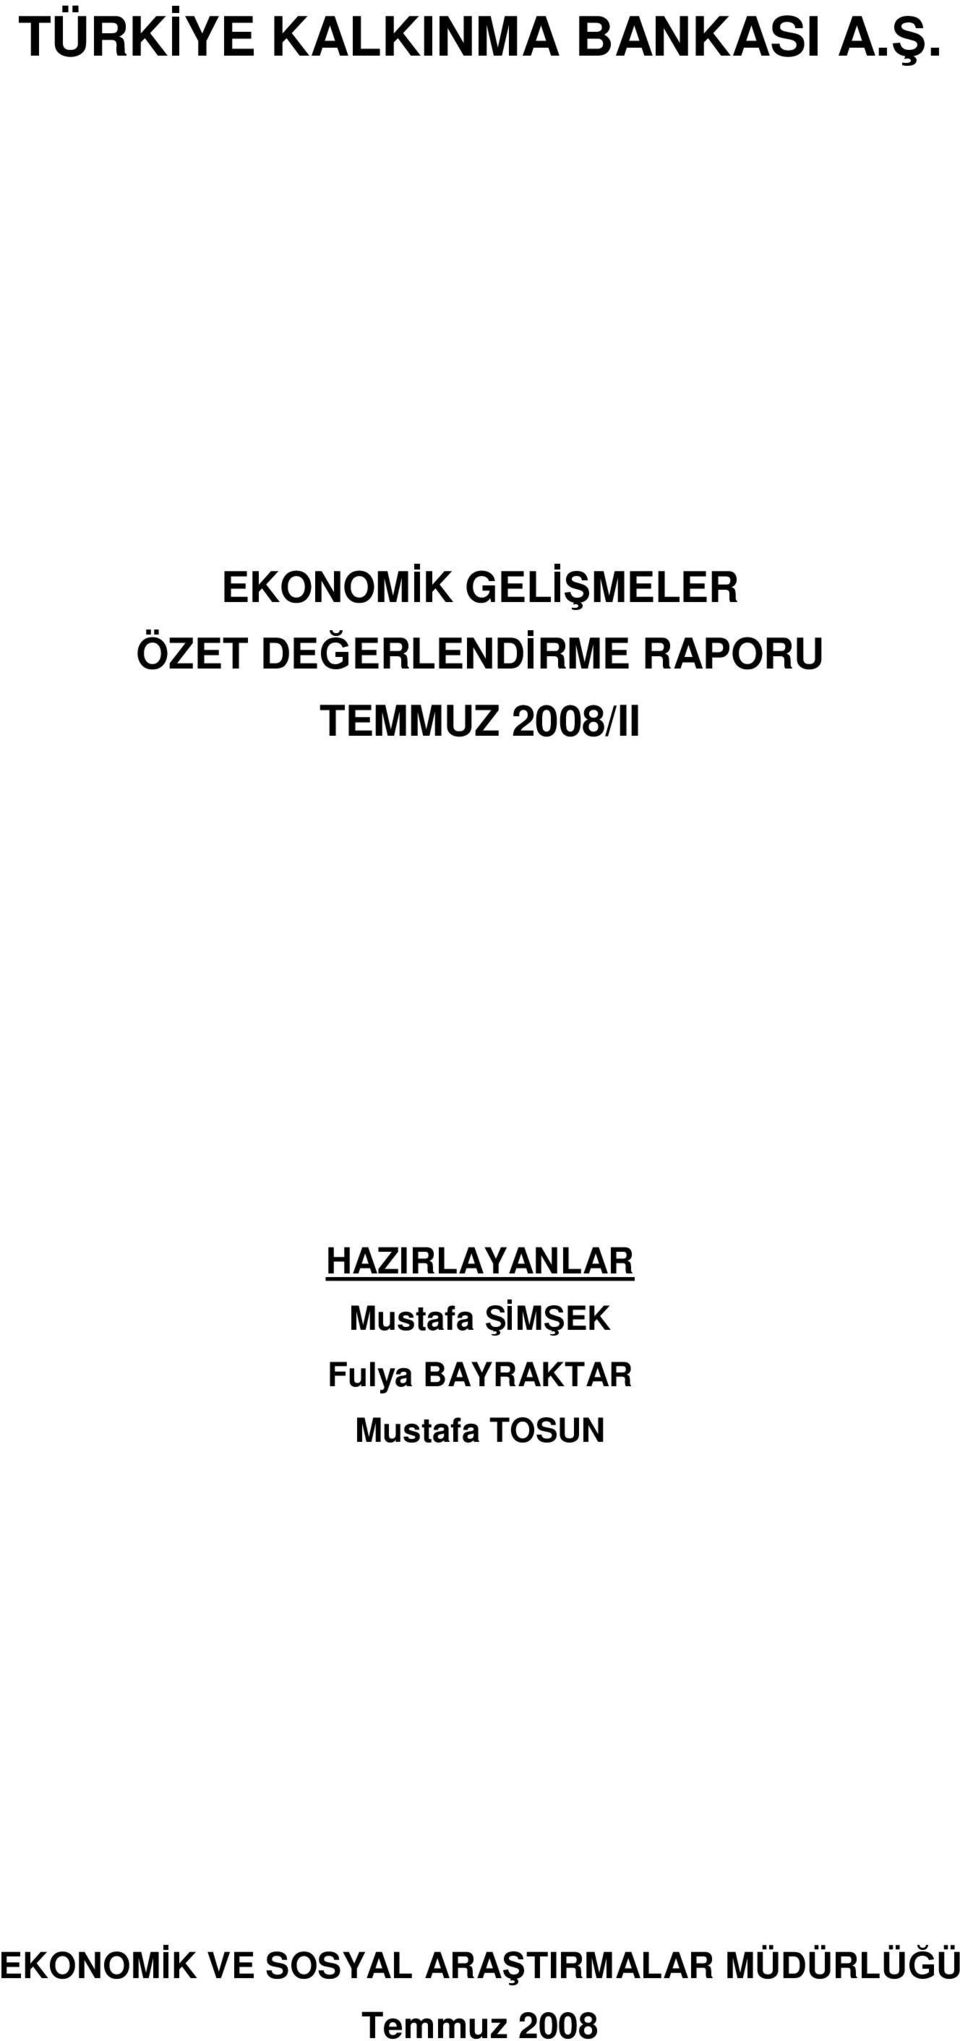 TEMMUZ 2008/II HAZIRLAYANLAR Mustafa ŞİMŞEK Fulya